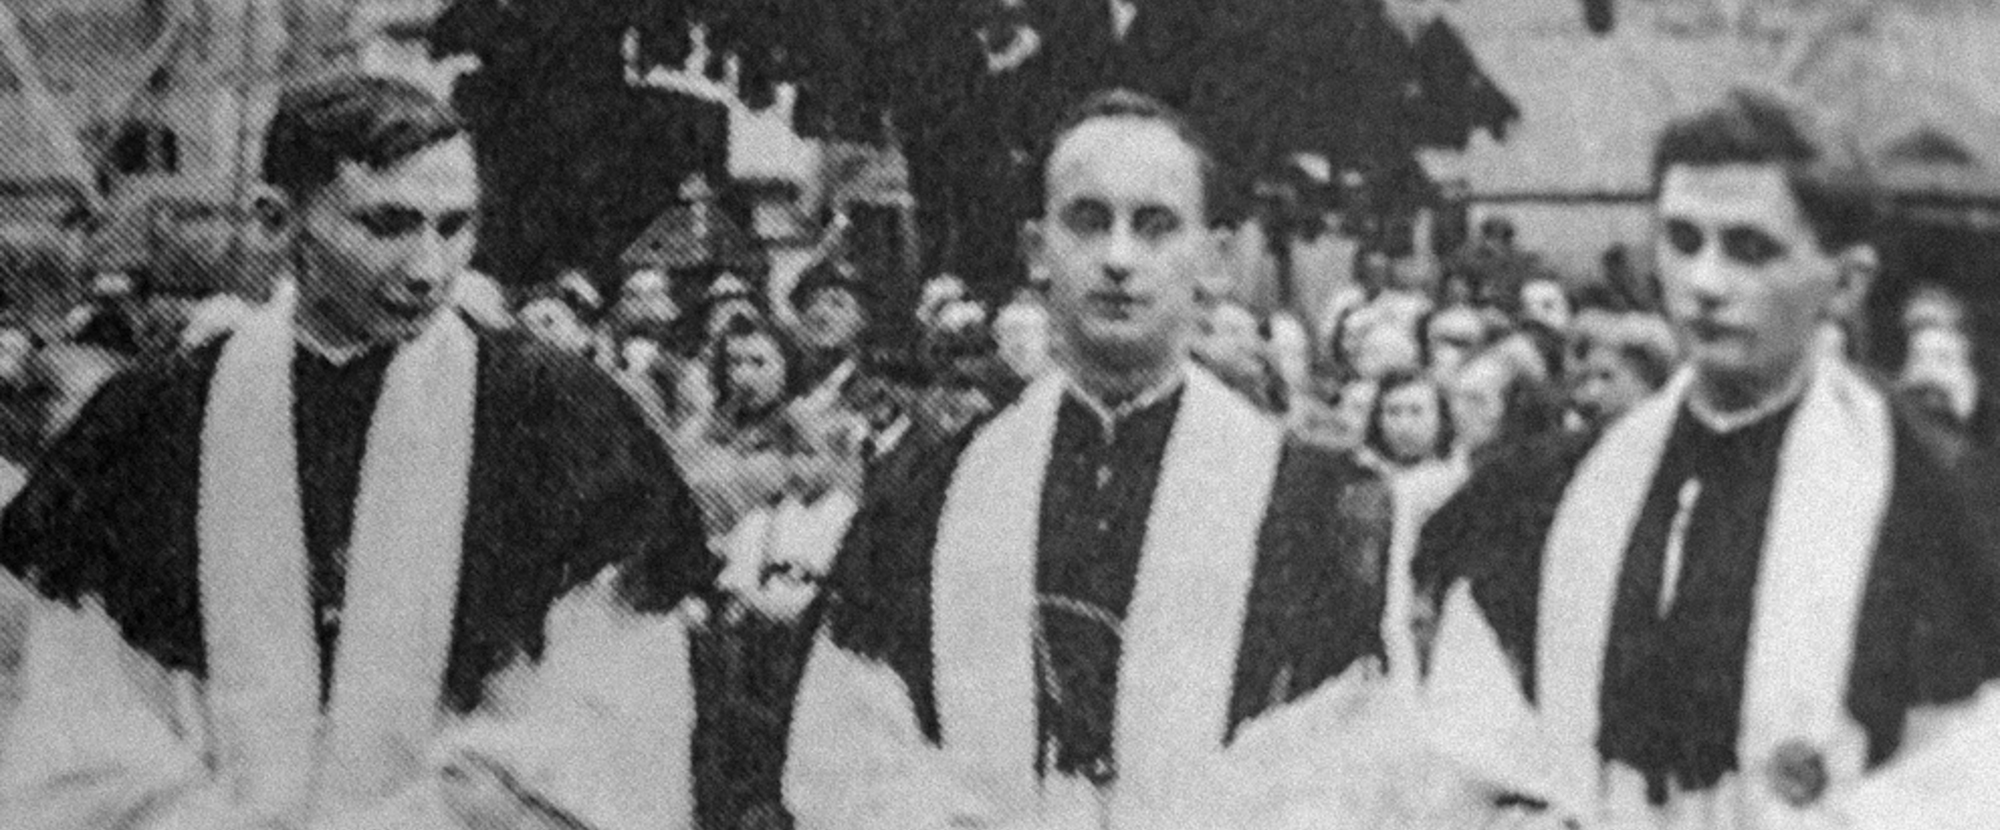 Die Brüder Georg (l.) und Joseph Ratzinger (r.) mit ihrem gemeinsamen Freund Rupert Berger nach ihrer Priesterweihe am 29. Juni 1951 in Freising.